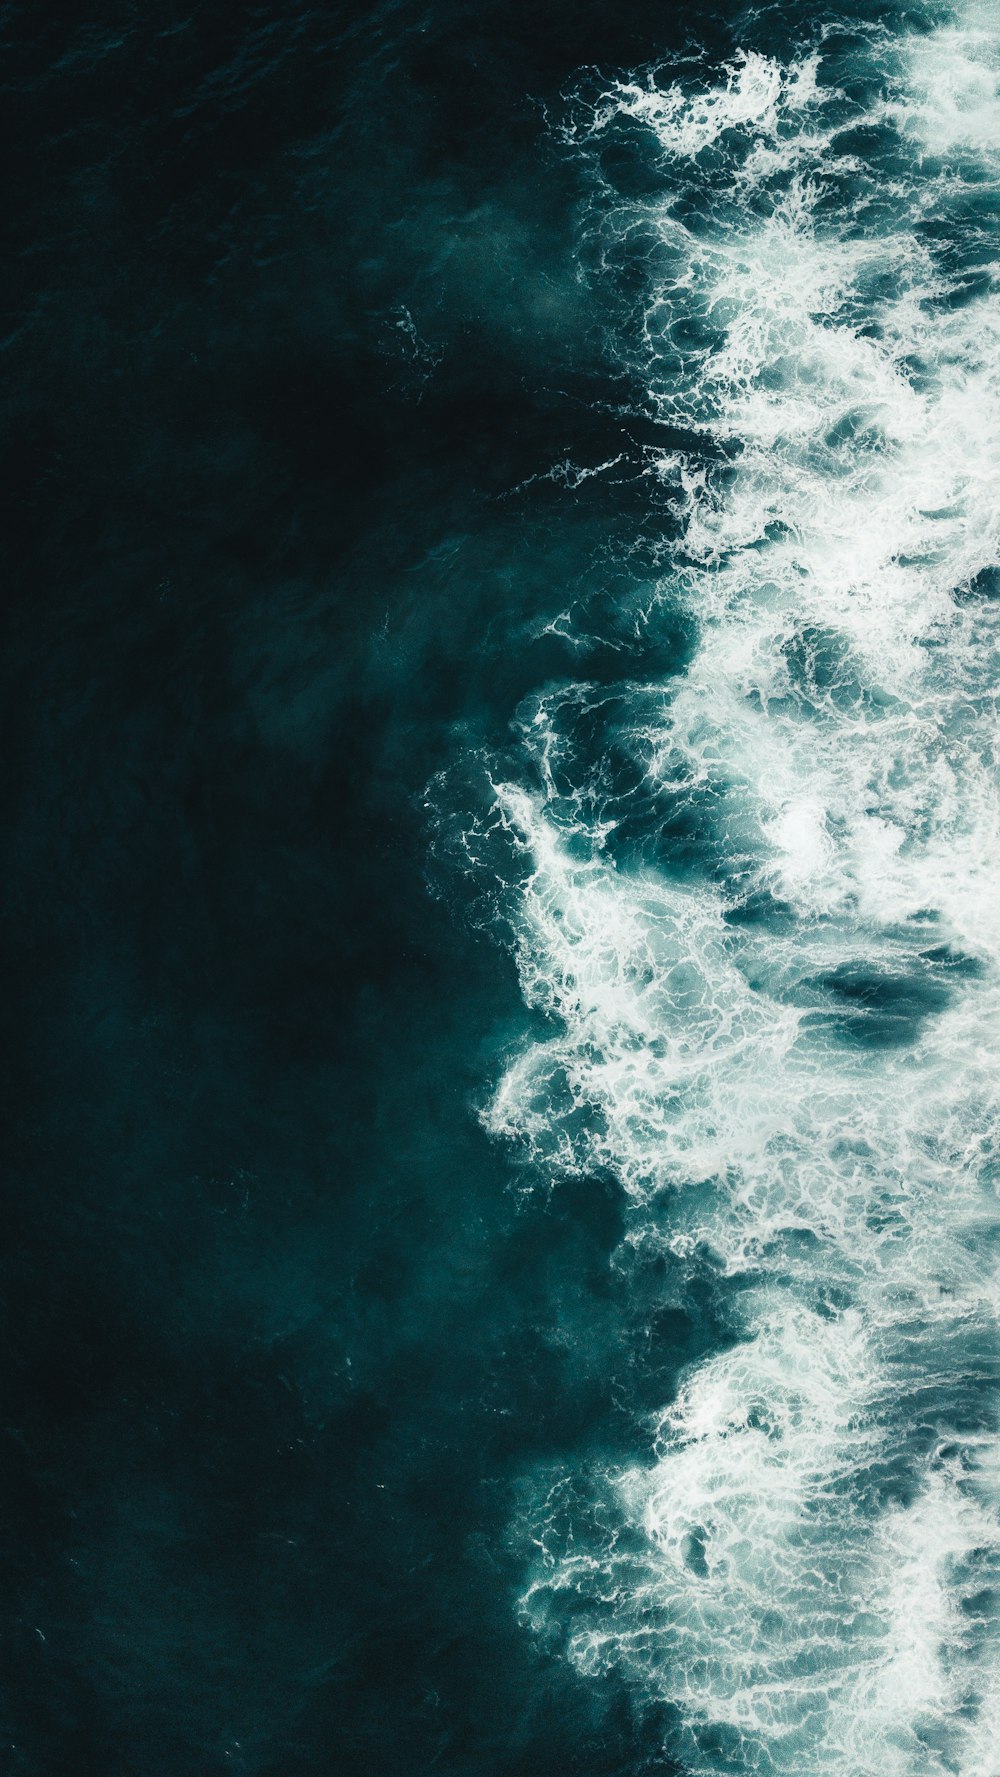 900+ Ocean Background Images: Download HD Backgrounds on Unsplash